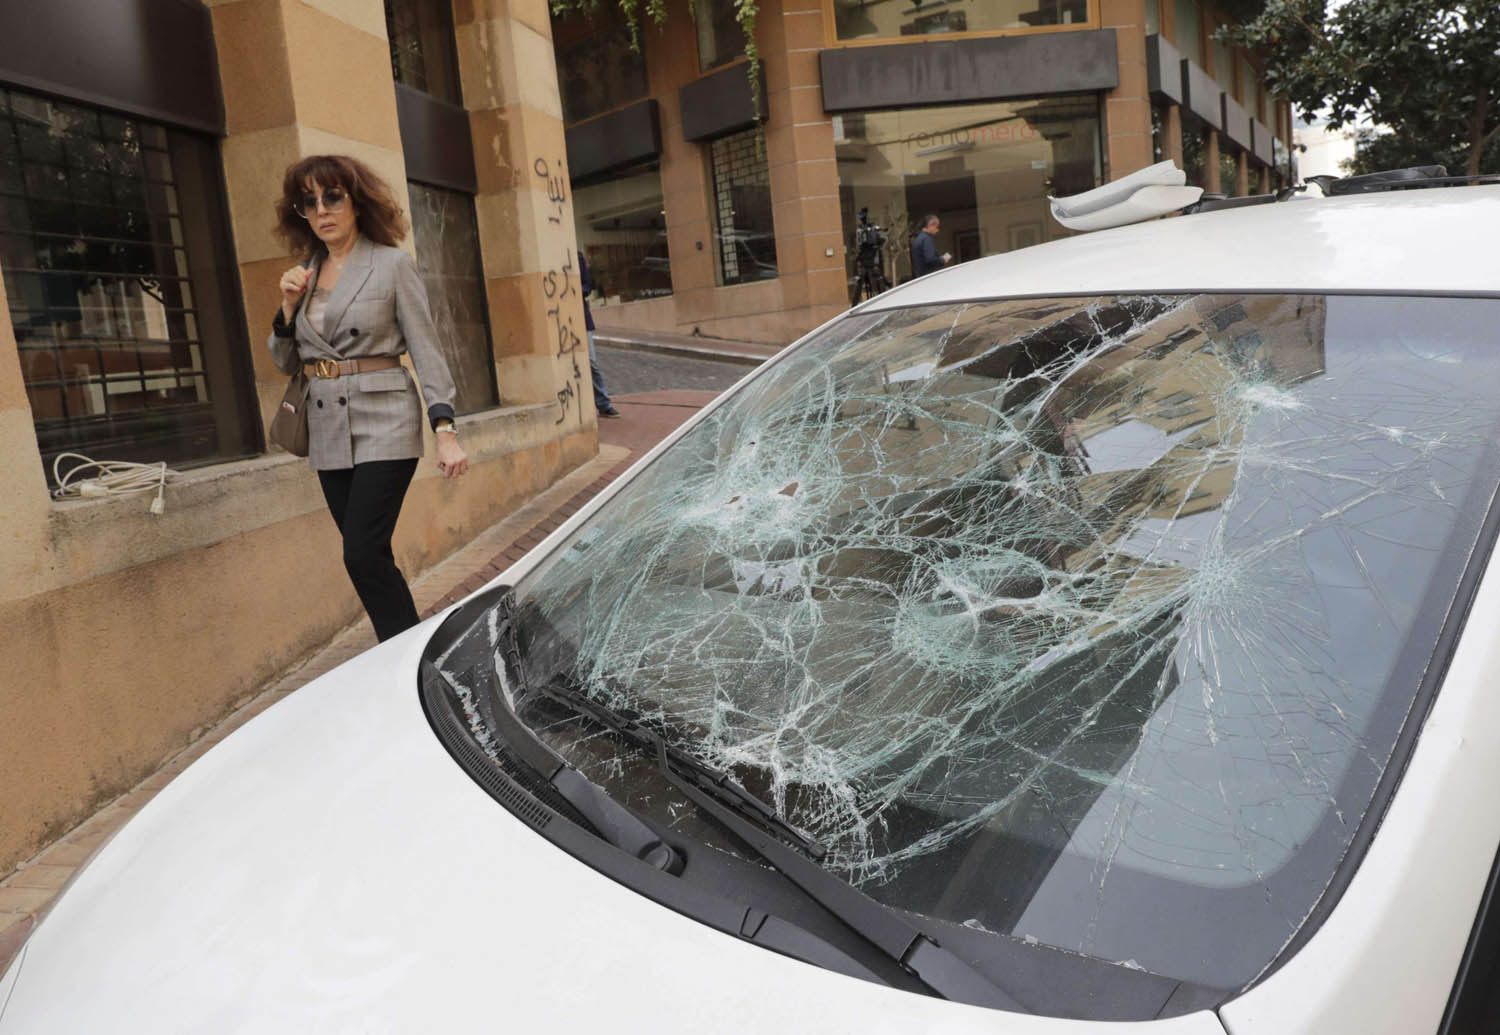 سيارة محطمة النوافذ وسط بيروت بعد اشتباكات بين انصار حزب الله وأمل والمحتجين